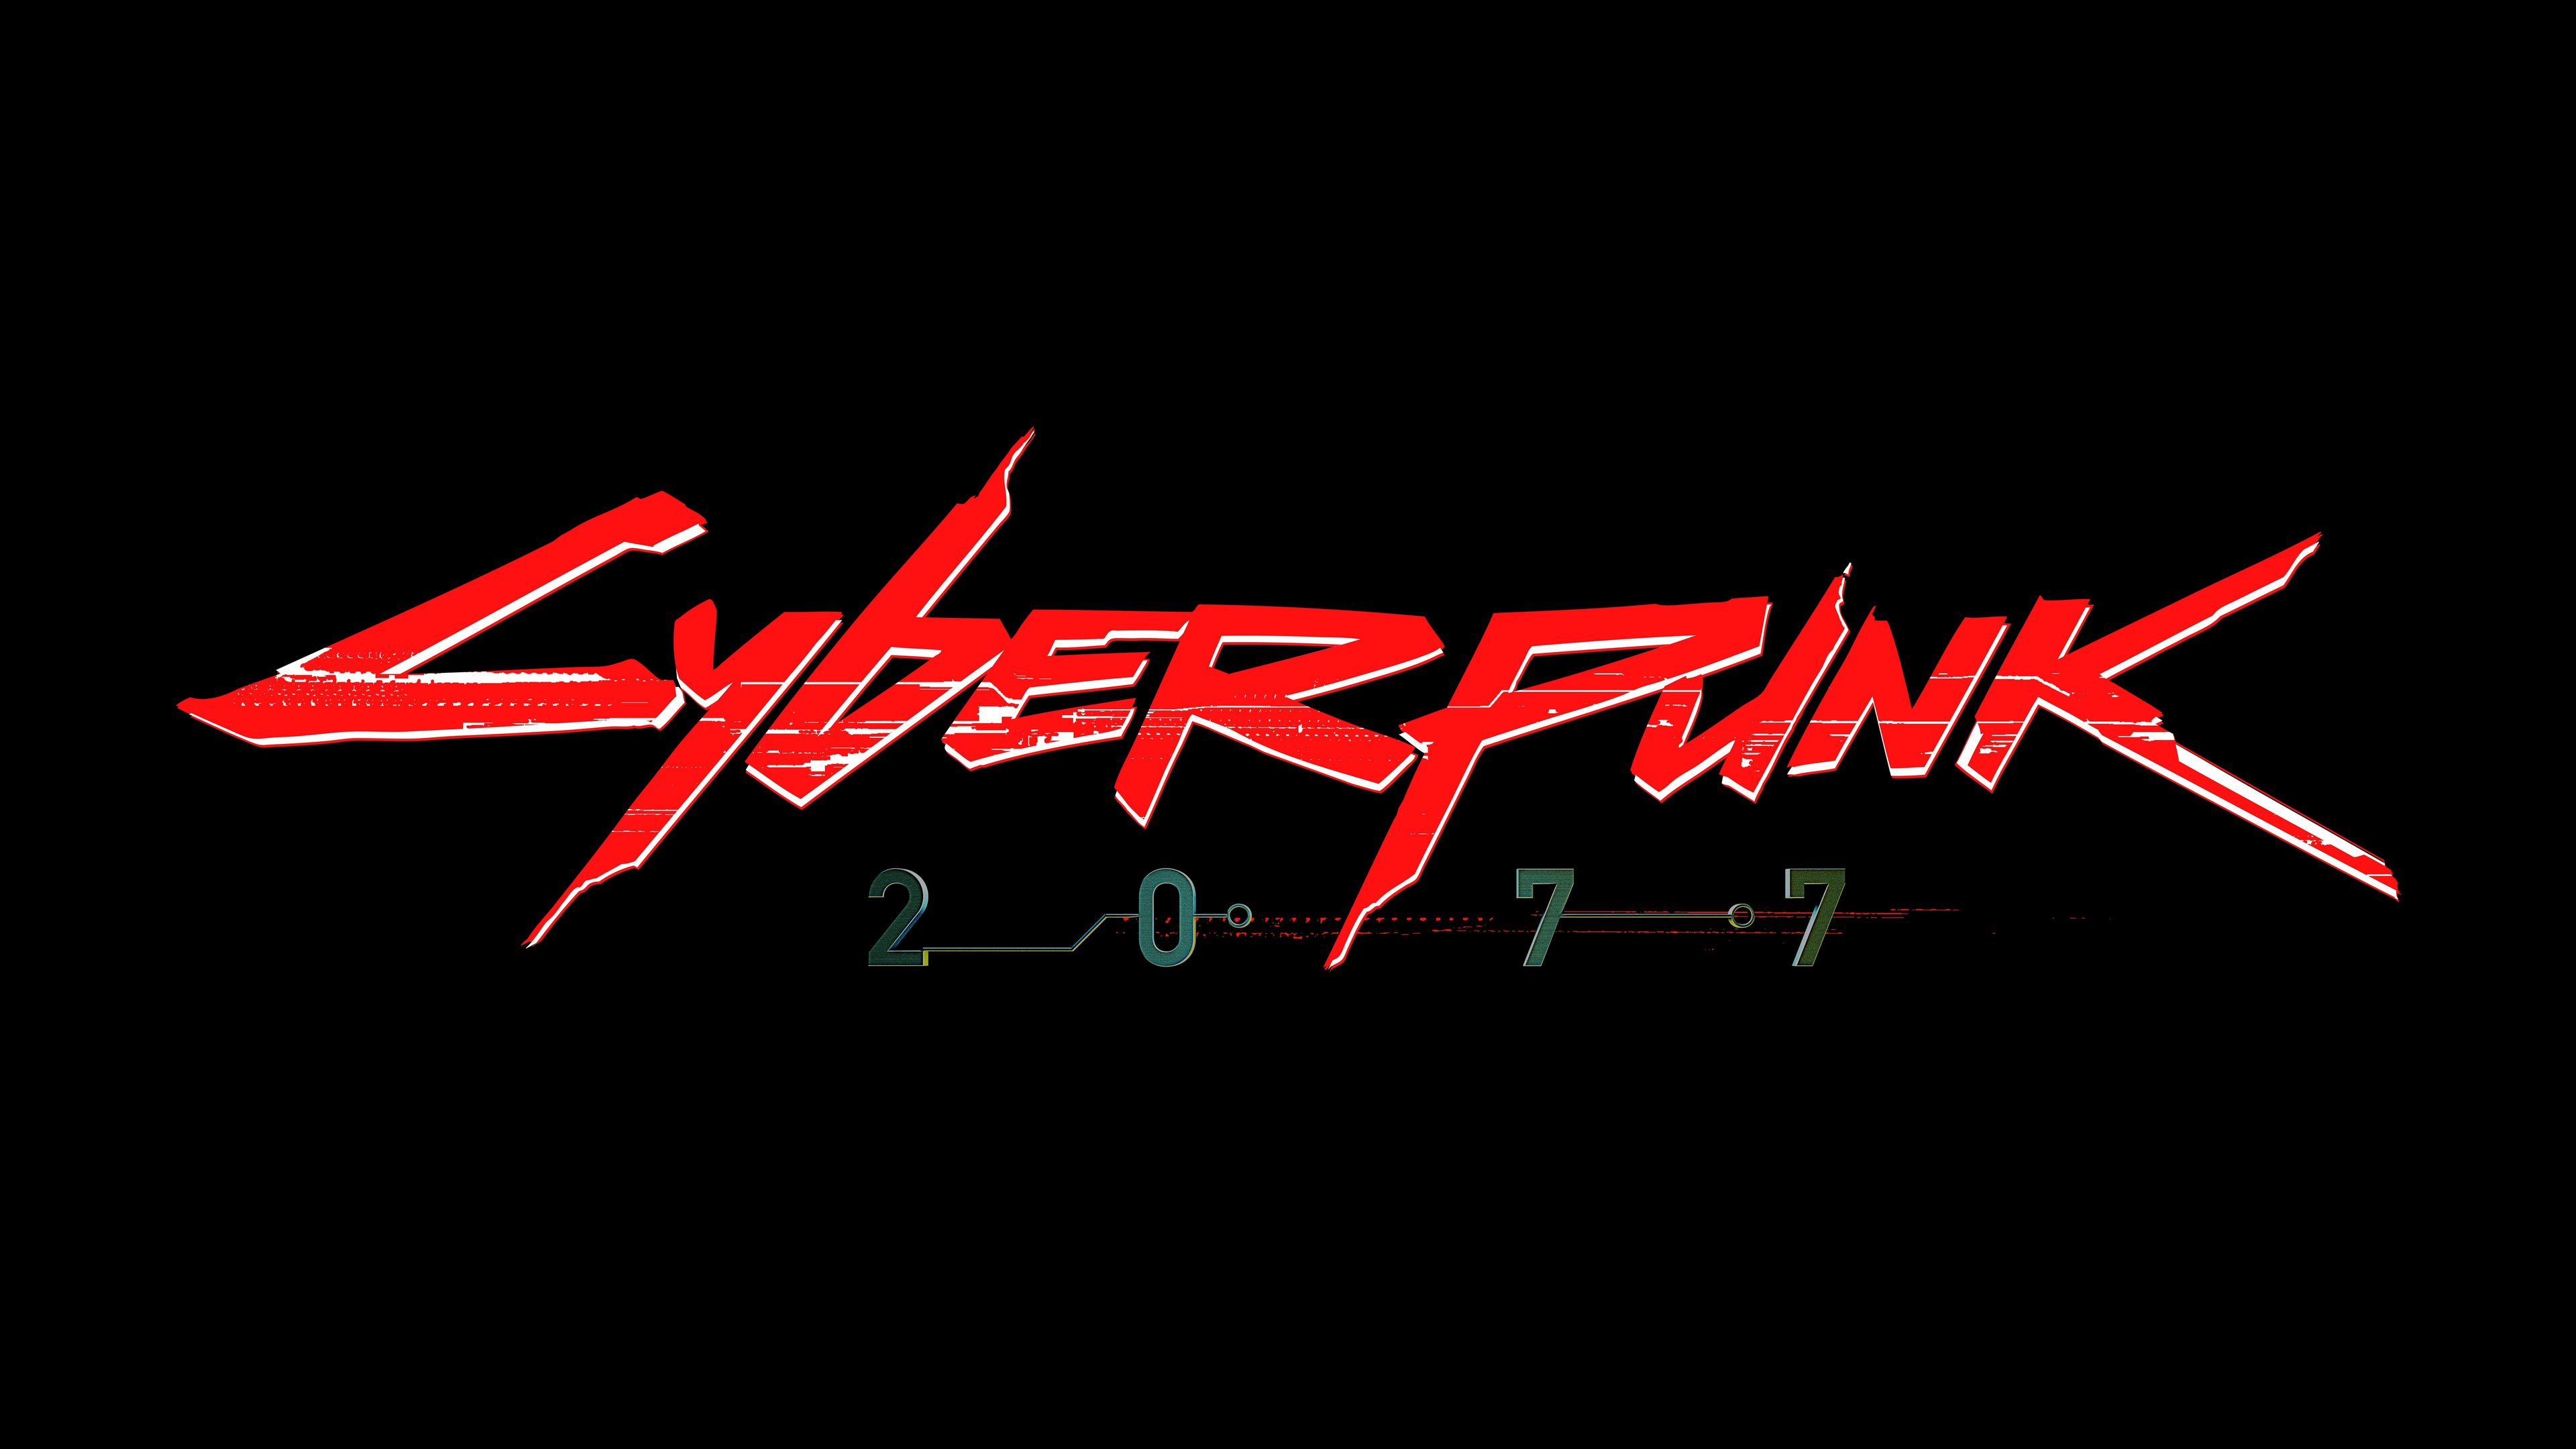 cyberpunk 2077 logo 4k 1545589450 - Cyberpunk 2077 Logo 4k - xbox games wallpapers, ps games wallpapers, pc games wallpapers, logo wallpapers, hd-wallpapers, games wallpapers, cyberpunk 2077 wallpapers, 4k-wallpapers